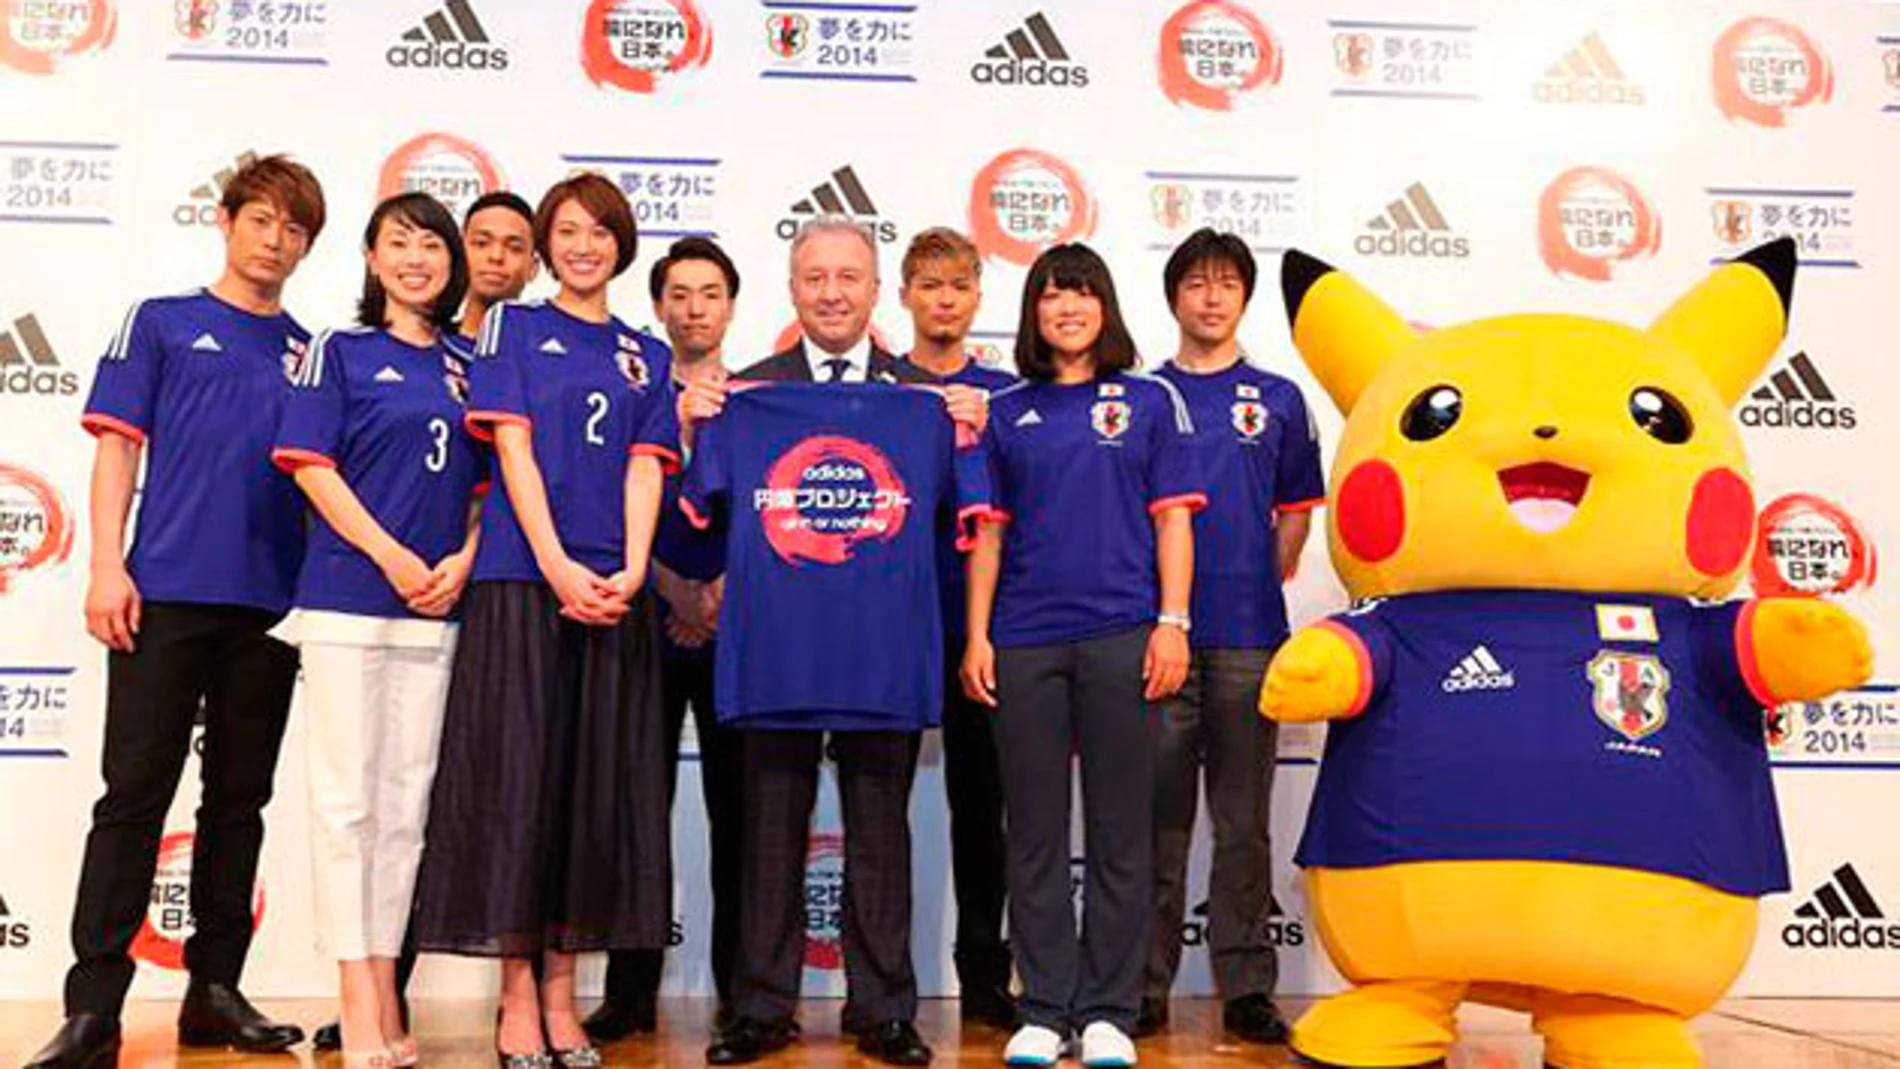 Pikachu, elegido como mascota de la selección japonesa en el mundial